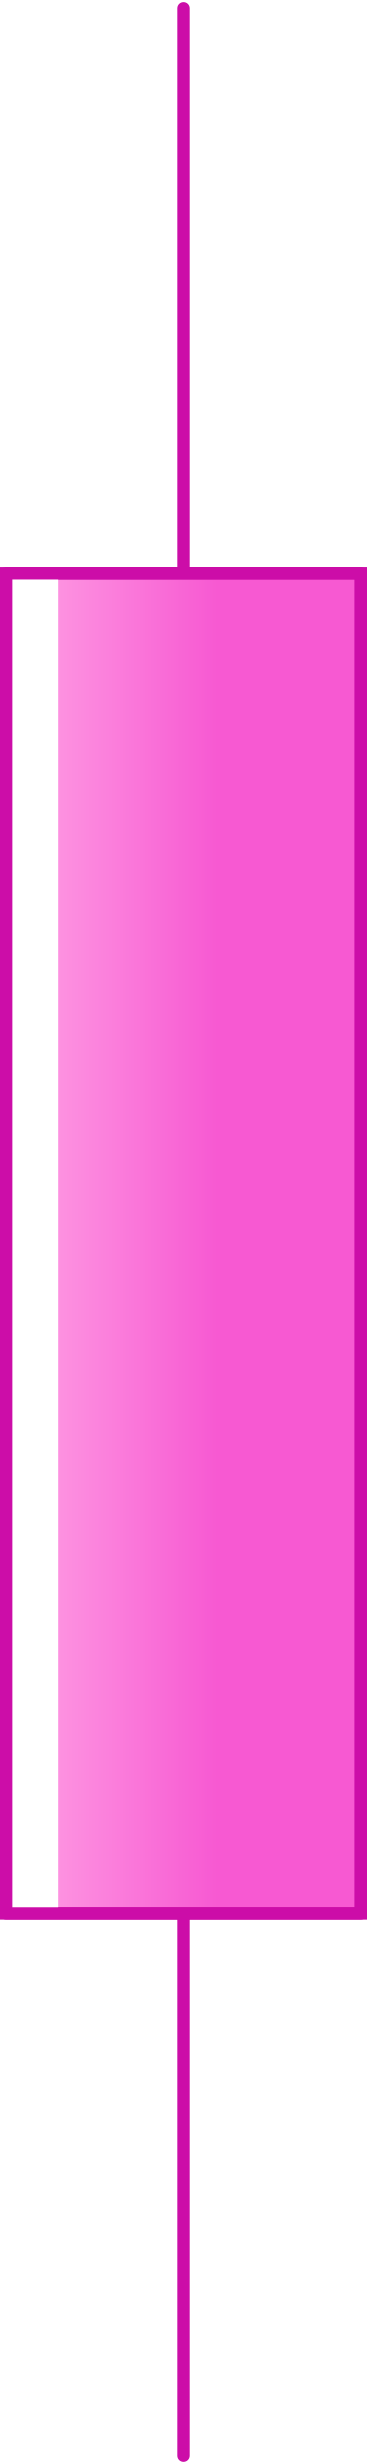 Розовая свеча для графика в PNG, SVG